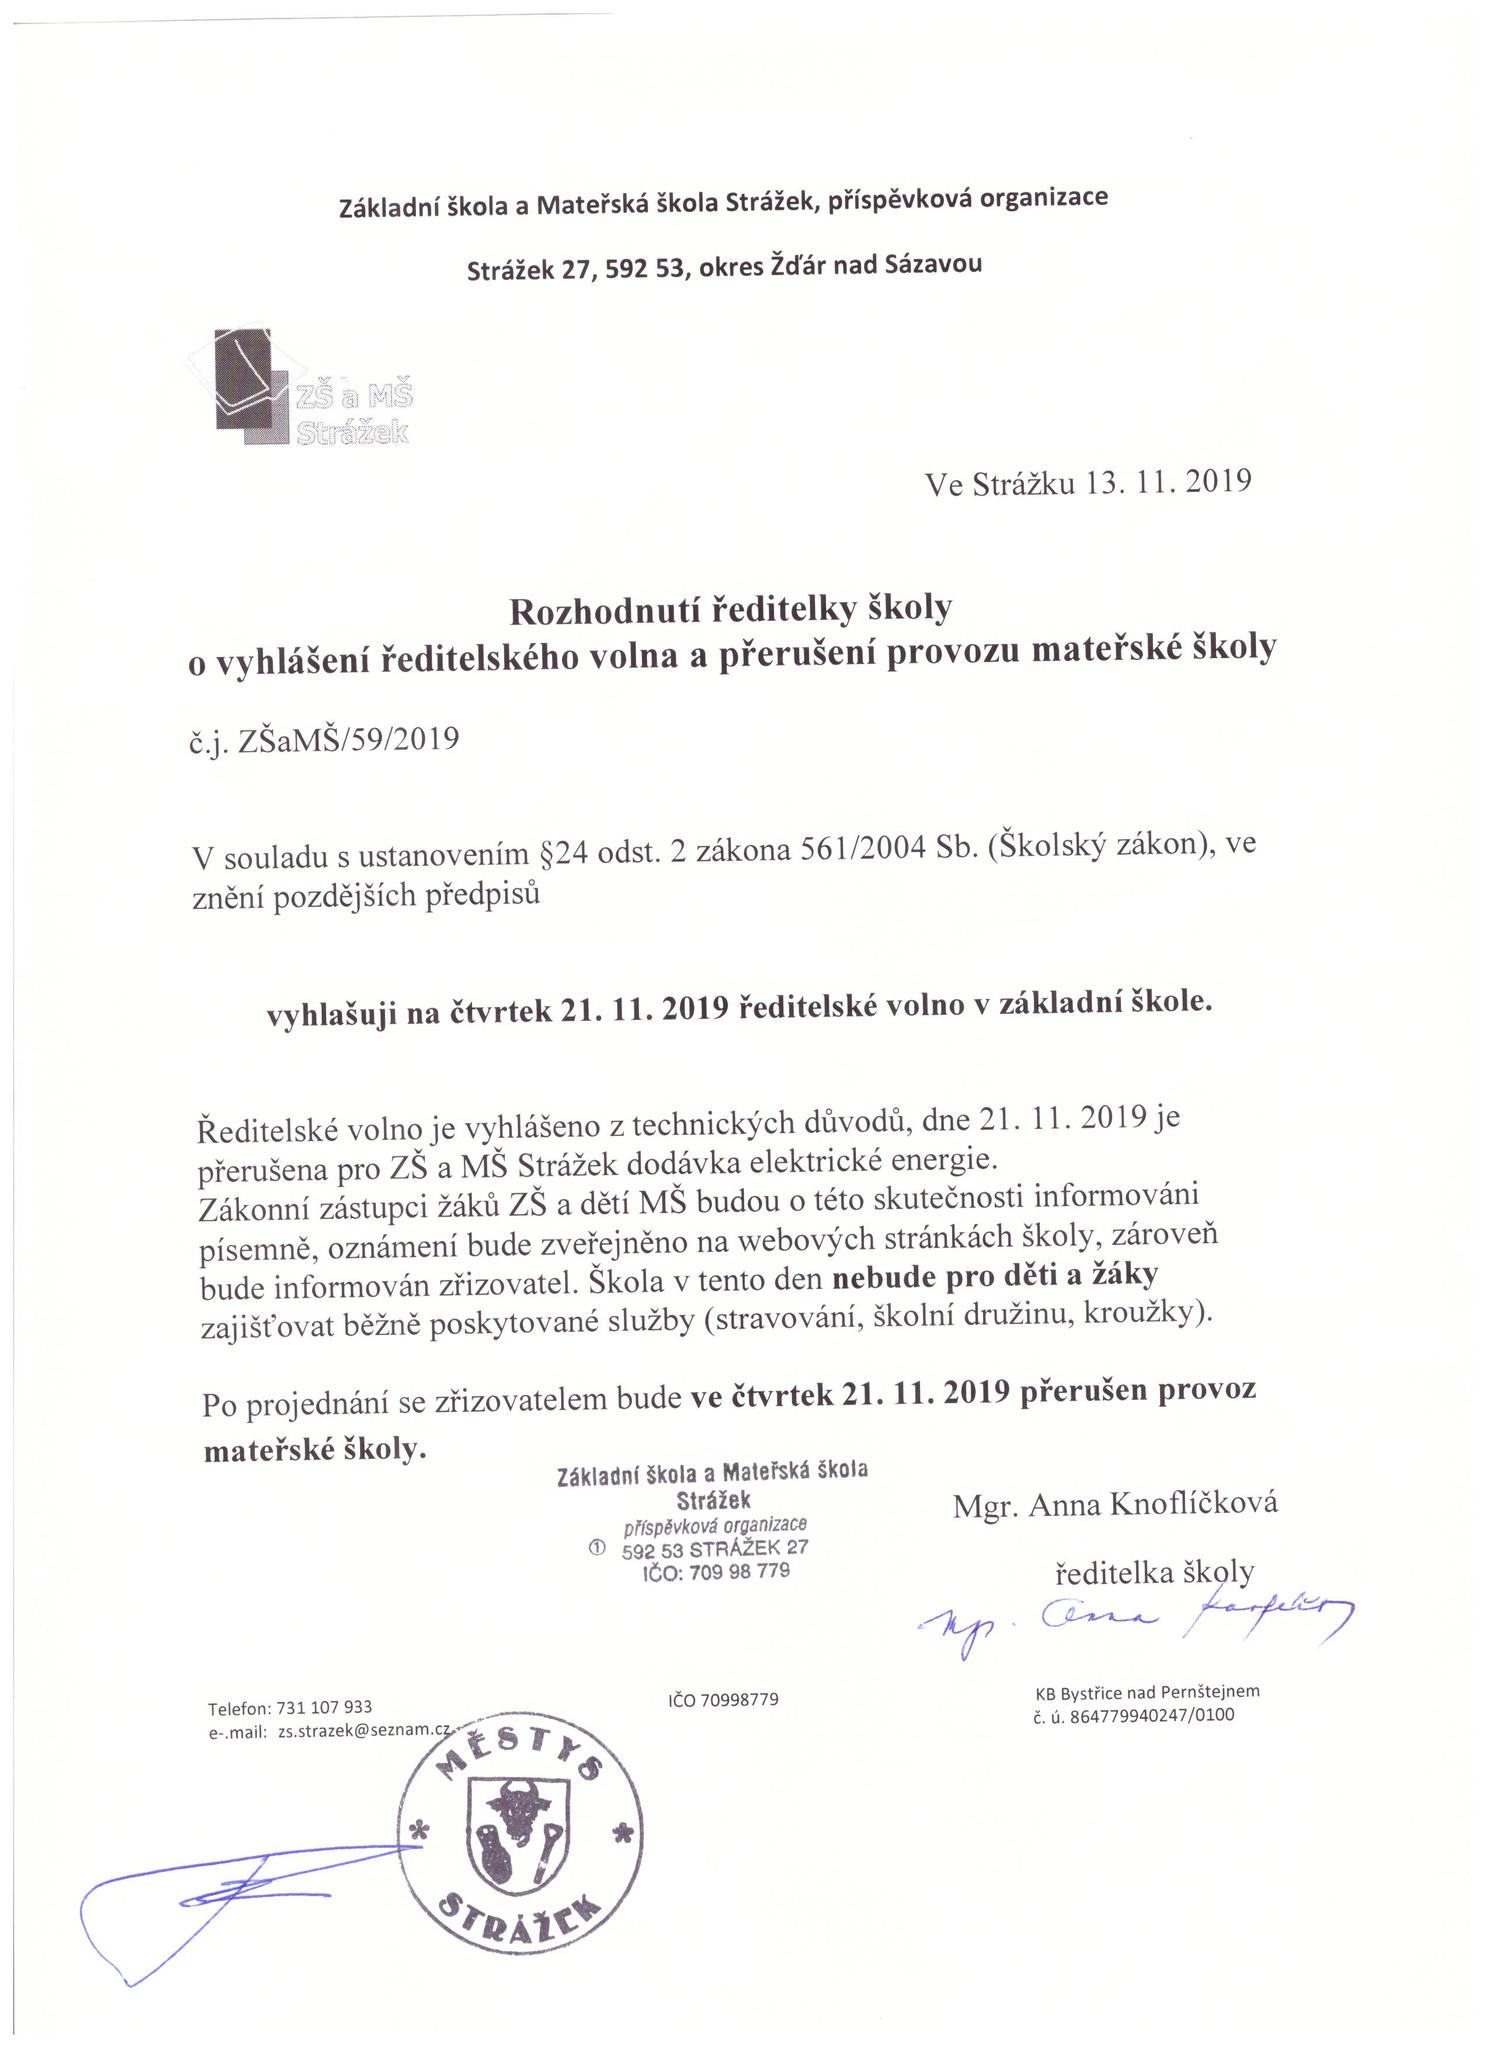 Vyhlášení ředitelského volna a přerušení provozu družiny a mateřské školy 21. 11. 2019